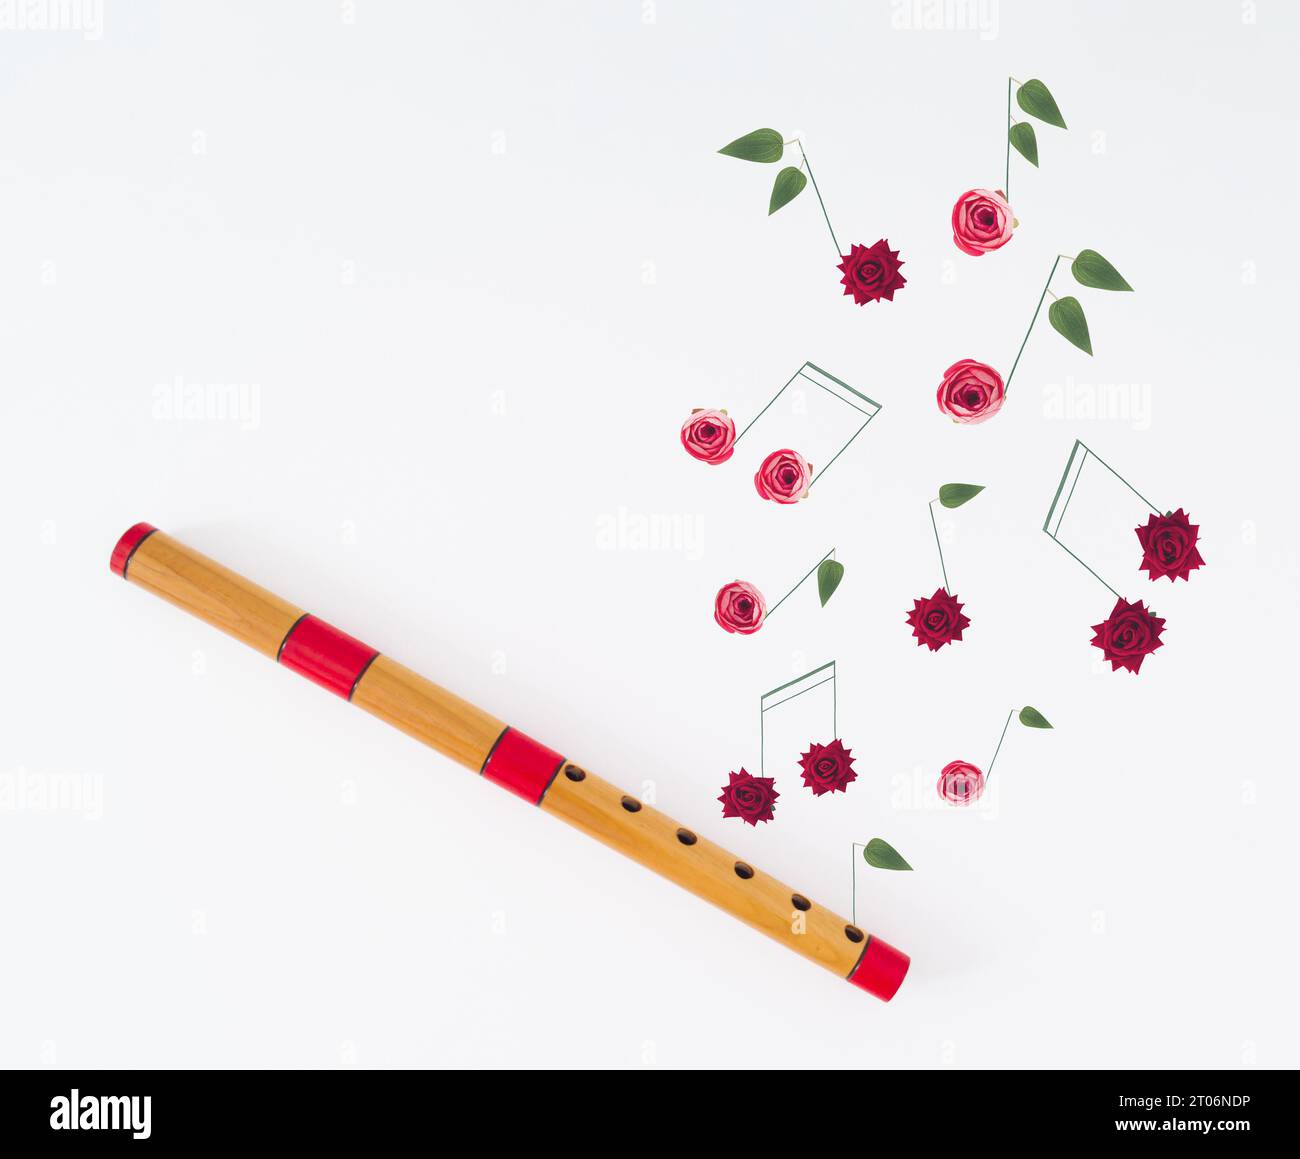 Layout creativo composto da flauto in legno e note musicali di vari fiori su sfondo bianco. Stile minimalista e alla moda con strumenti musicali in legno. Foto Stock